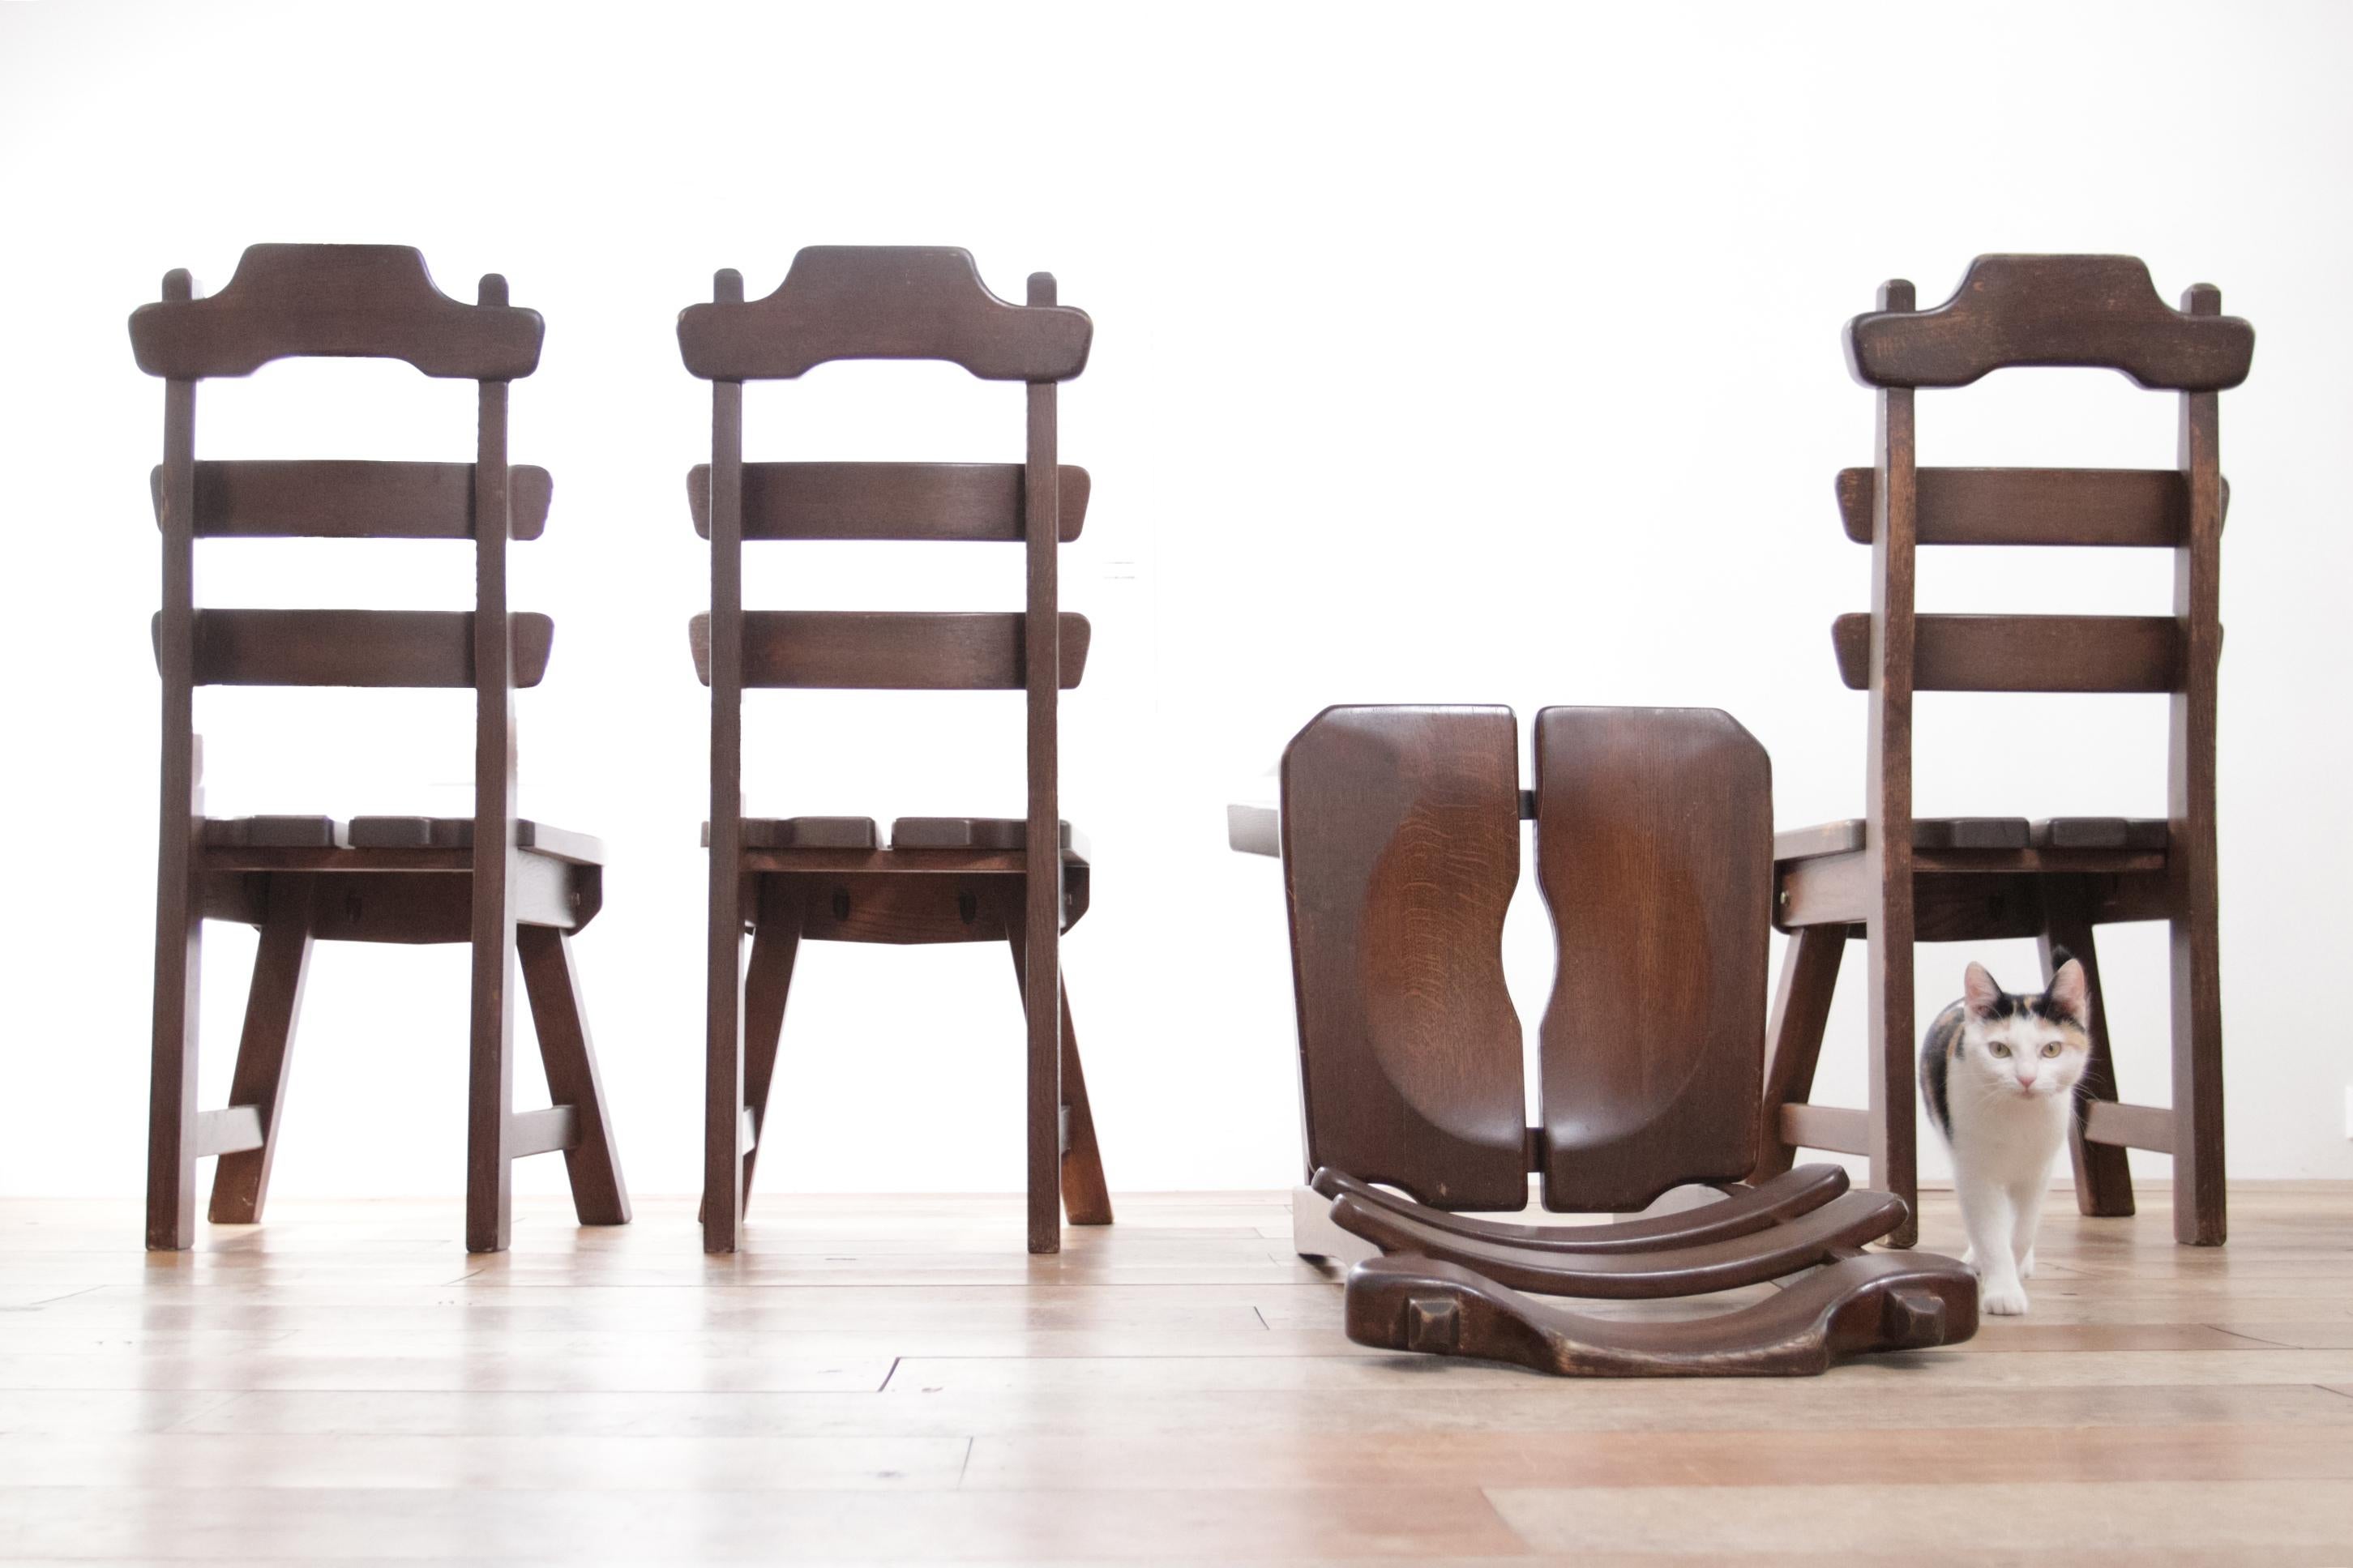 4 robuste und schwere Stühle aus dunkler Eiche.
Sie passen perfekt zum Stil von Designern wie Axel Einar Hjorth, Charlotte Perriand, Jean Touret und Charles Dudouyt.
Der Stuhl sitzt bequem und die Verwendung von ausschließlich natürlichen